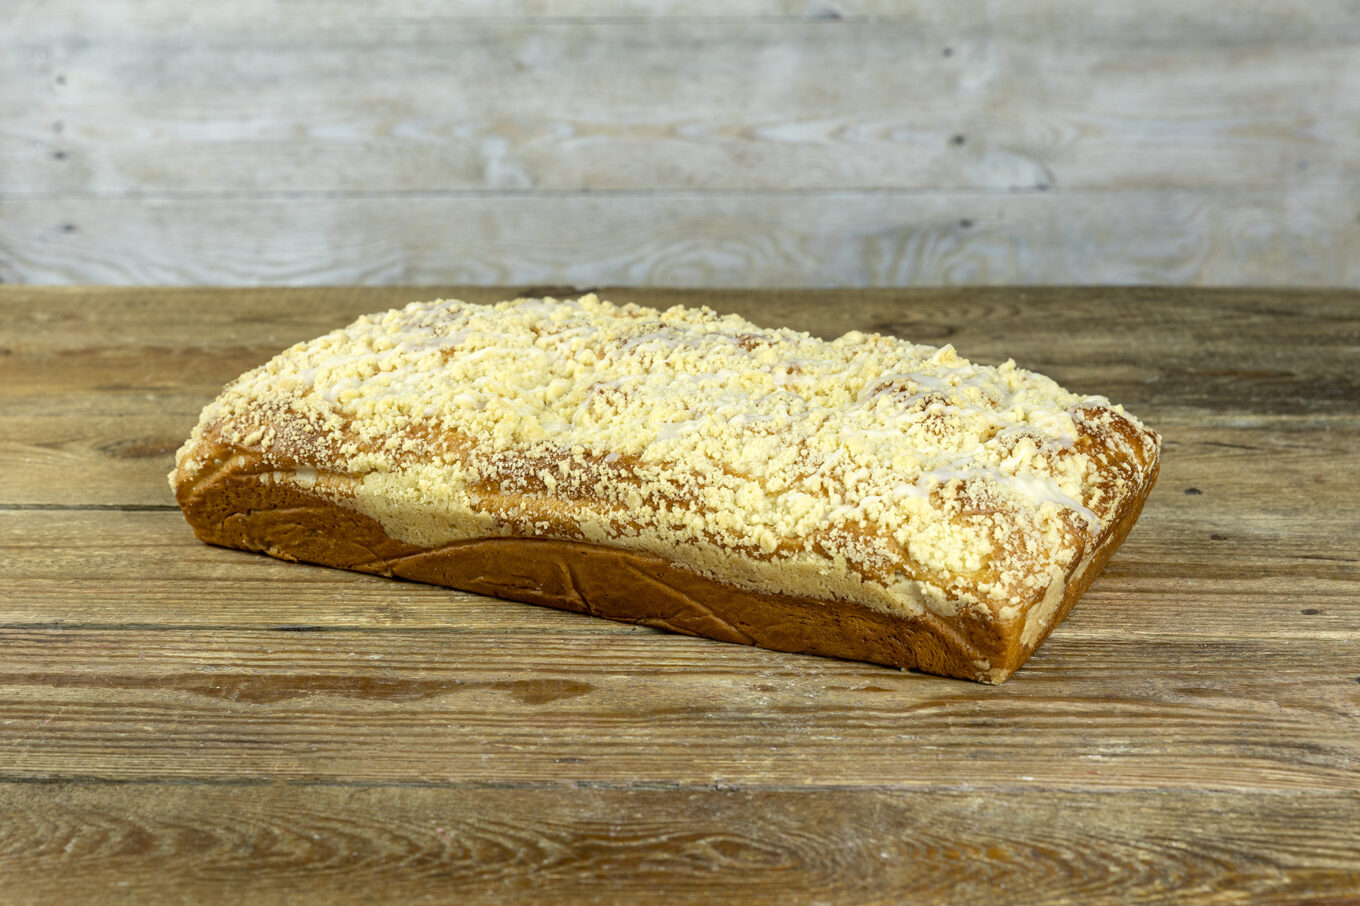 pastel de levadura con streusel Cukiernia Jacek Placek es sinónimo del sabor de los pasteles caseros elaborados con productos naturales.